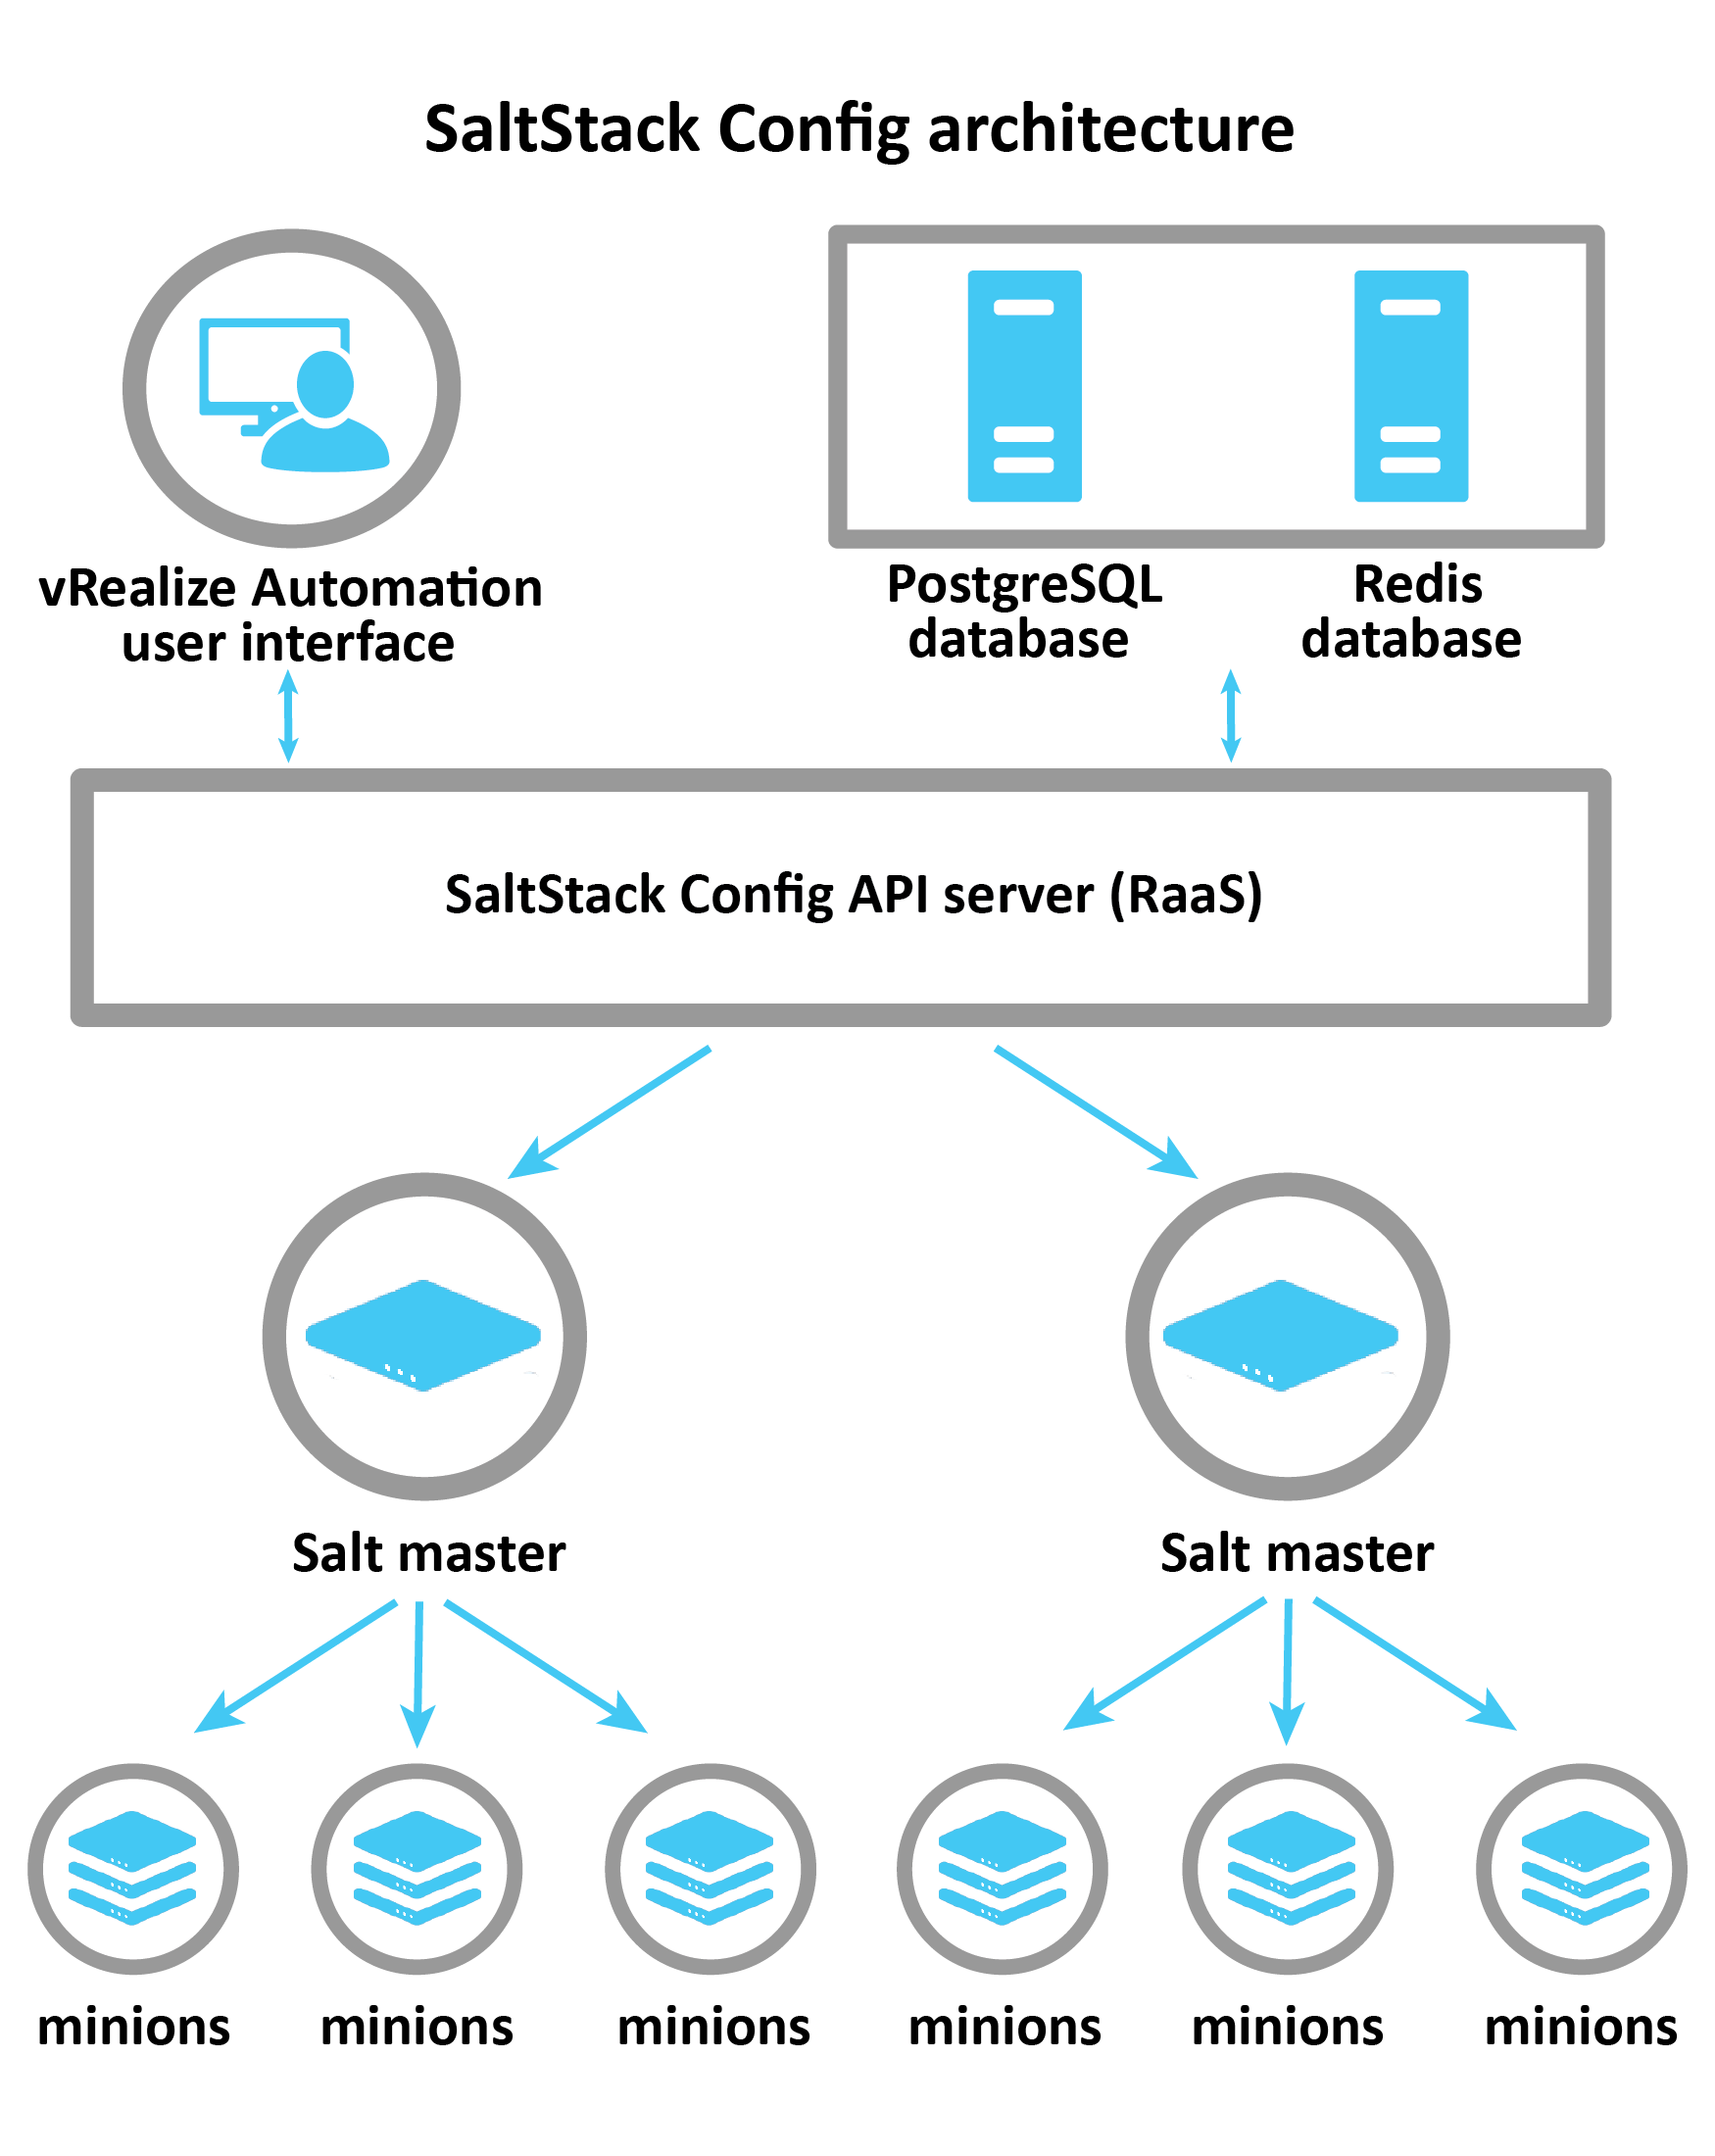 Diagramma che spiega l'architettura di SaltStack Config: vRA, Postgress e Redis si connettono al server RaaS che controlla i Salt Master. I Salt Master passano quindi le informazioni ai singoli minion.